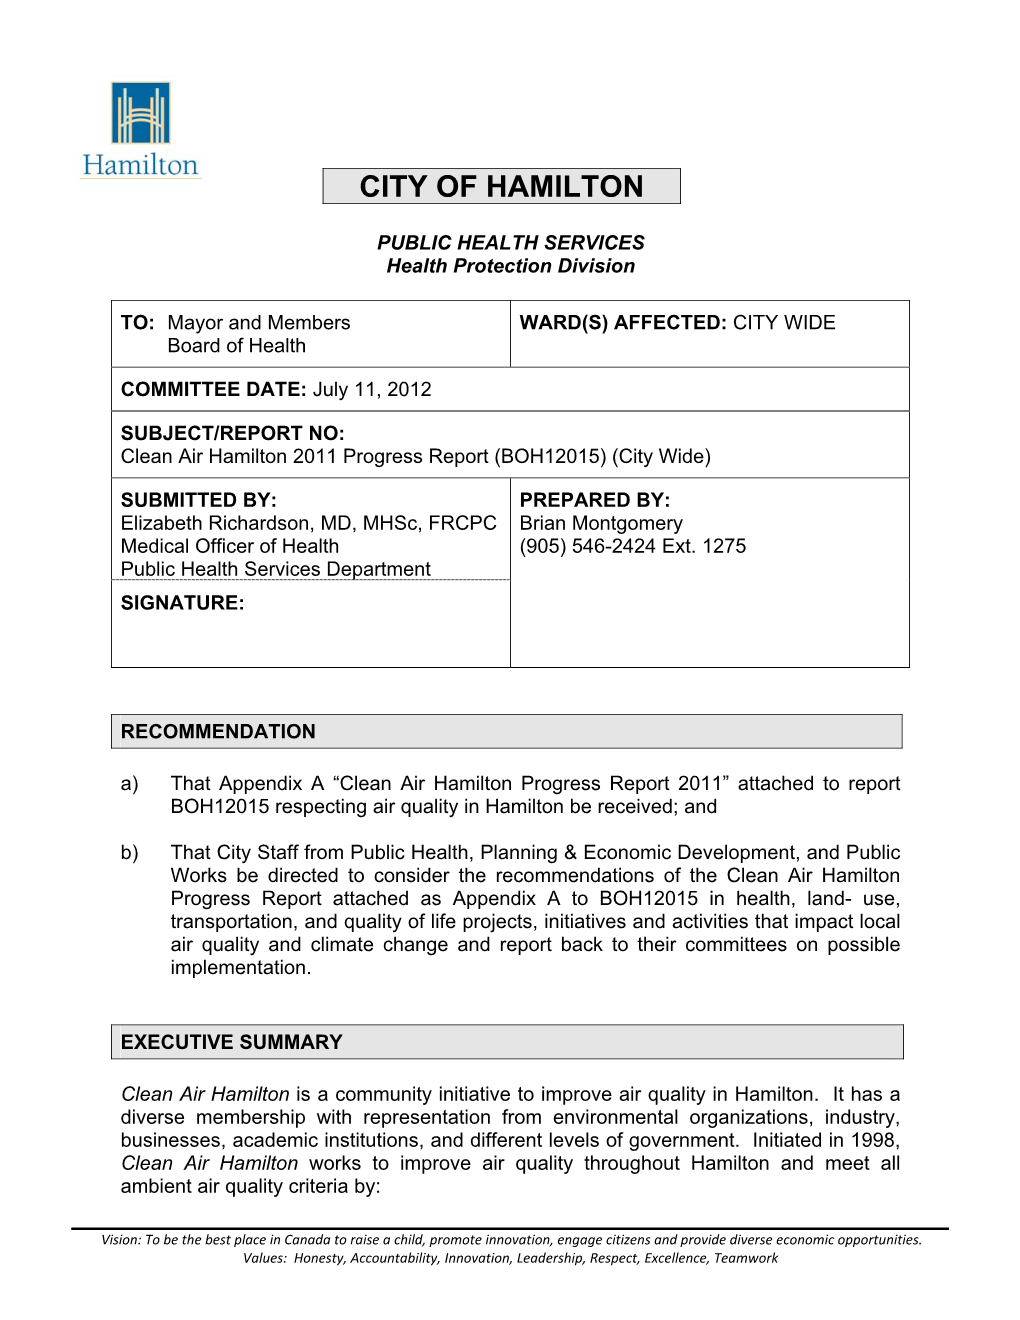 Clean Air Hamilton 2011 Progress Report (BOH12015) (City Wide)